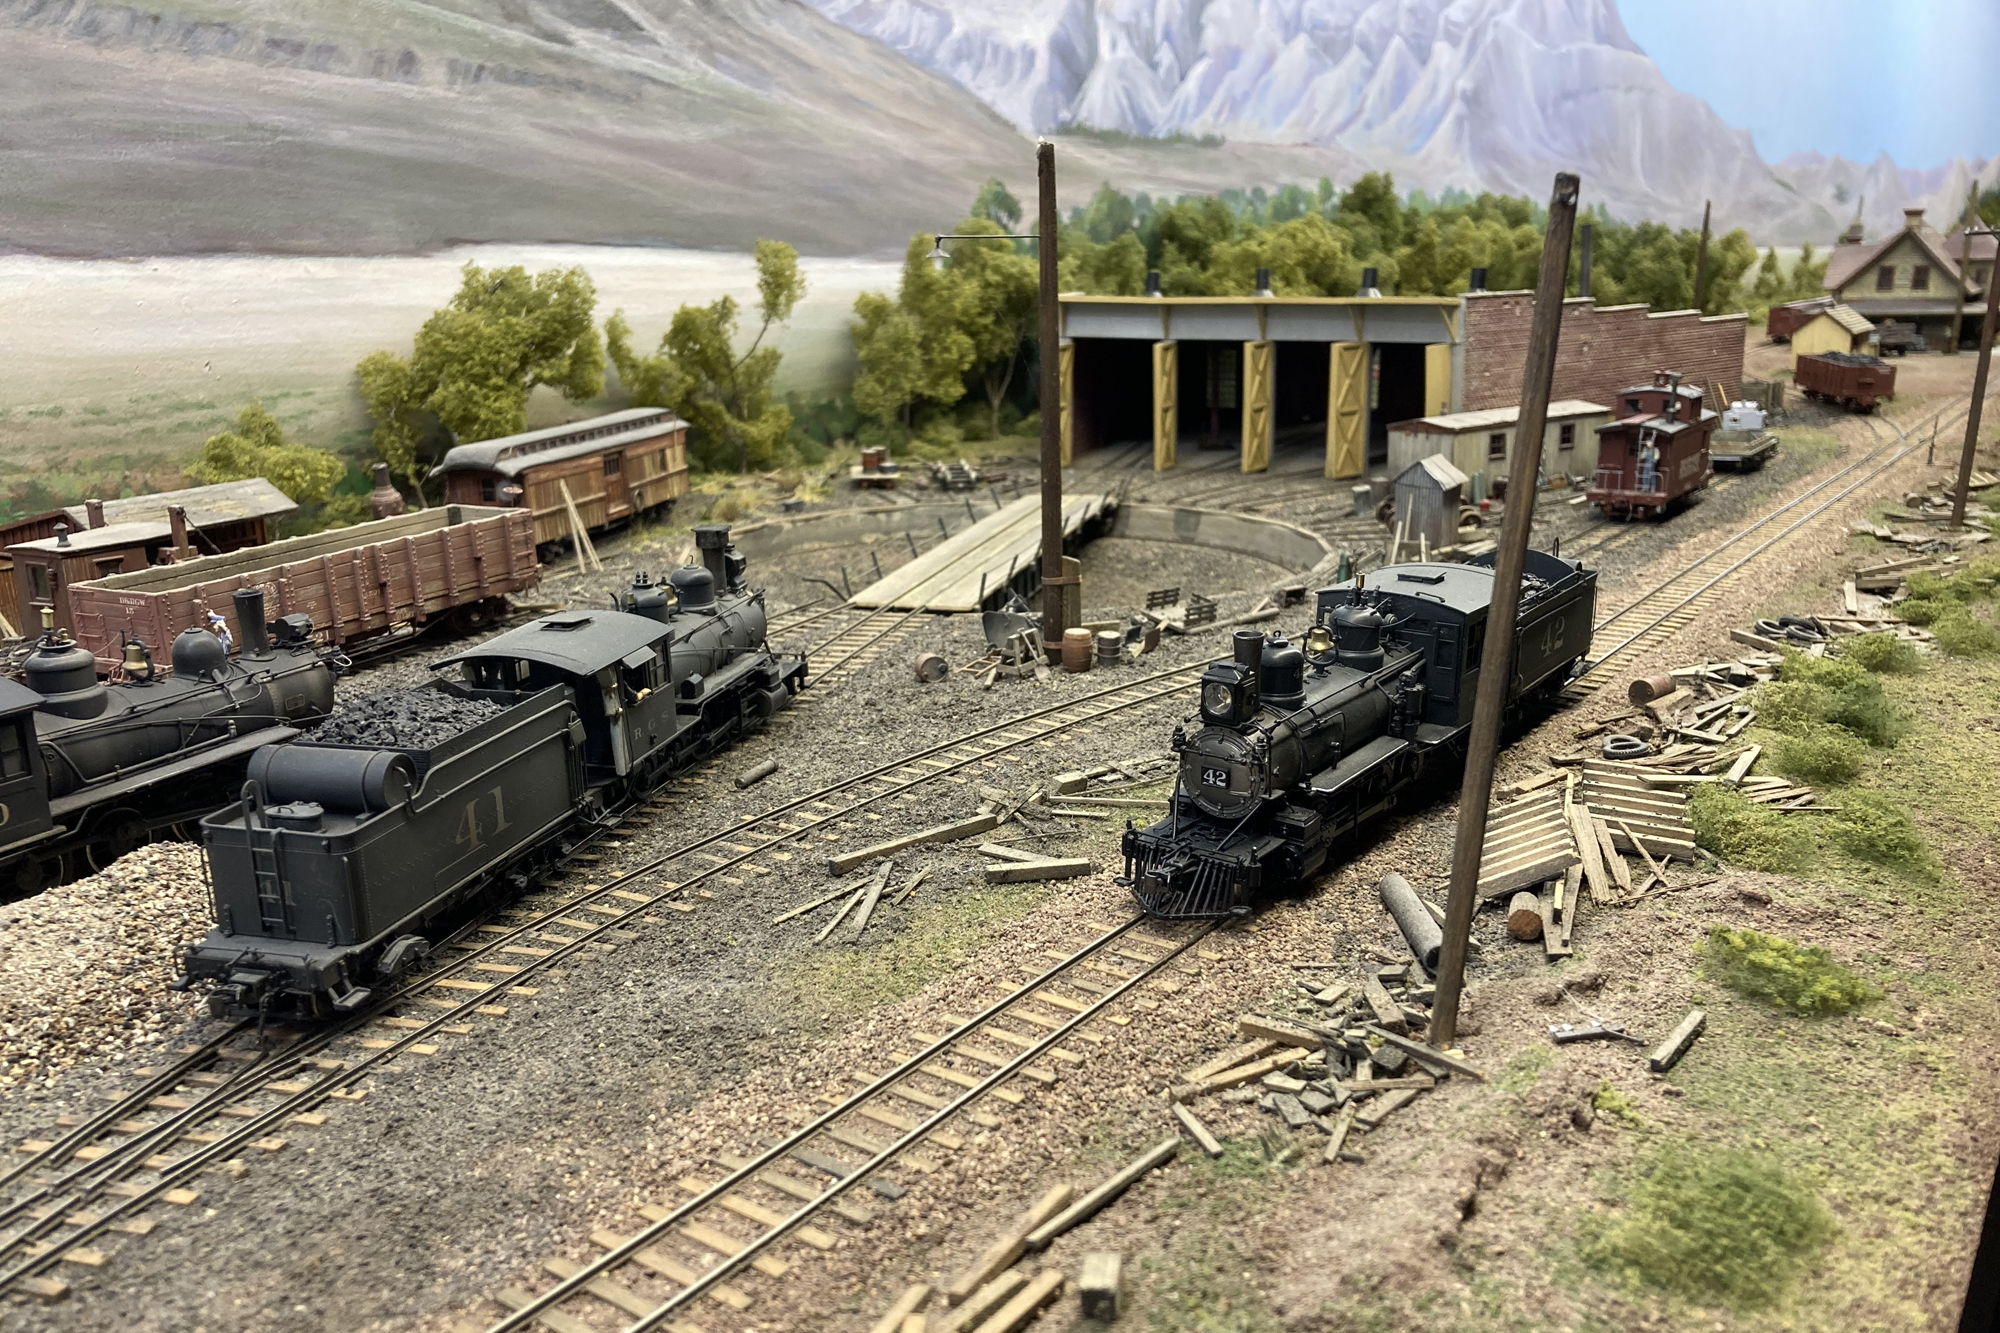 Joel Shank's Rio Grande Southern Sn3 scale model train layout.